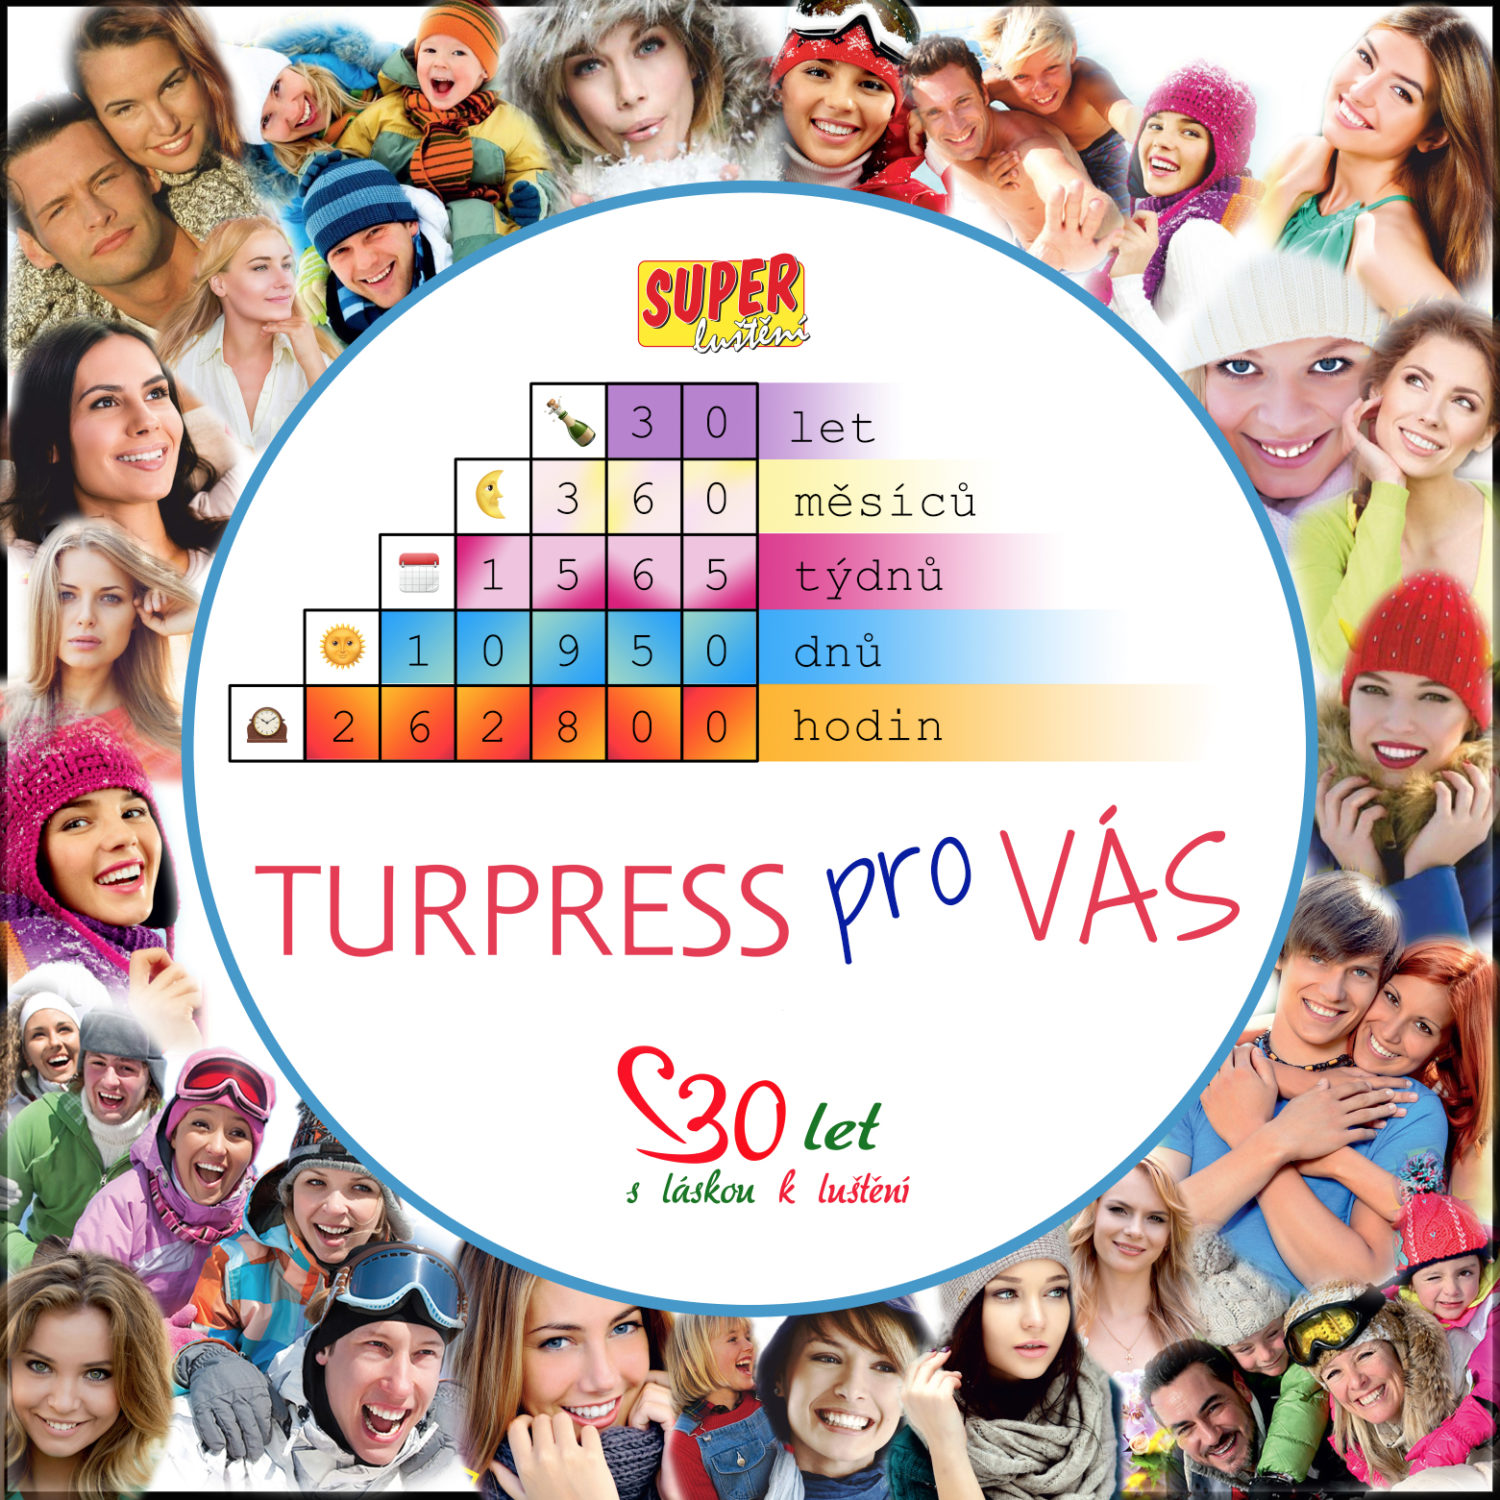 30 let vydavatelství Turpress